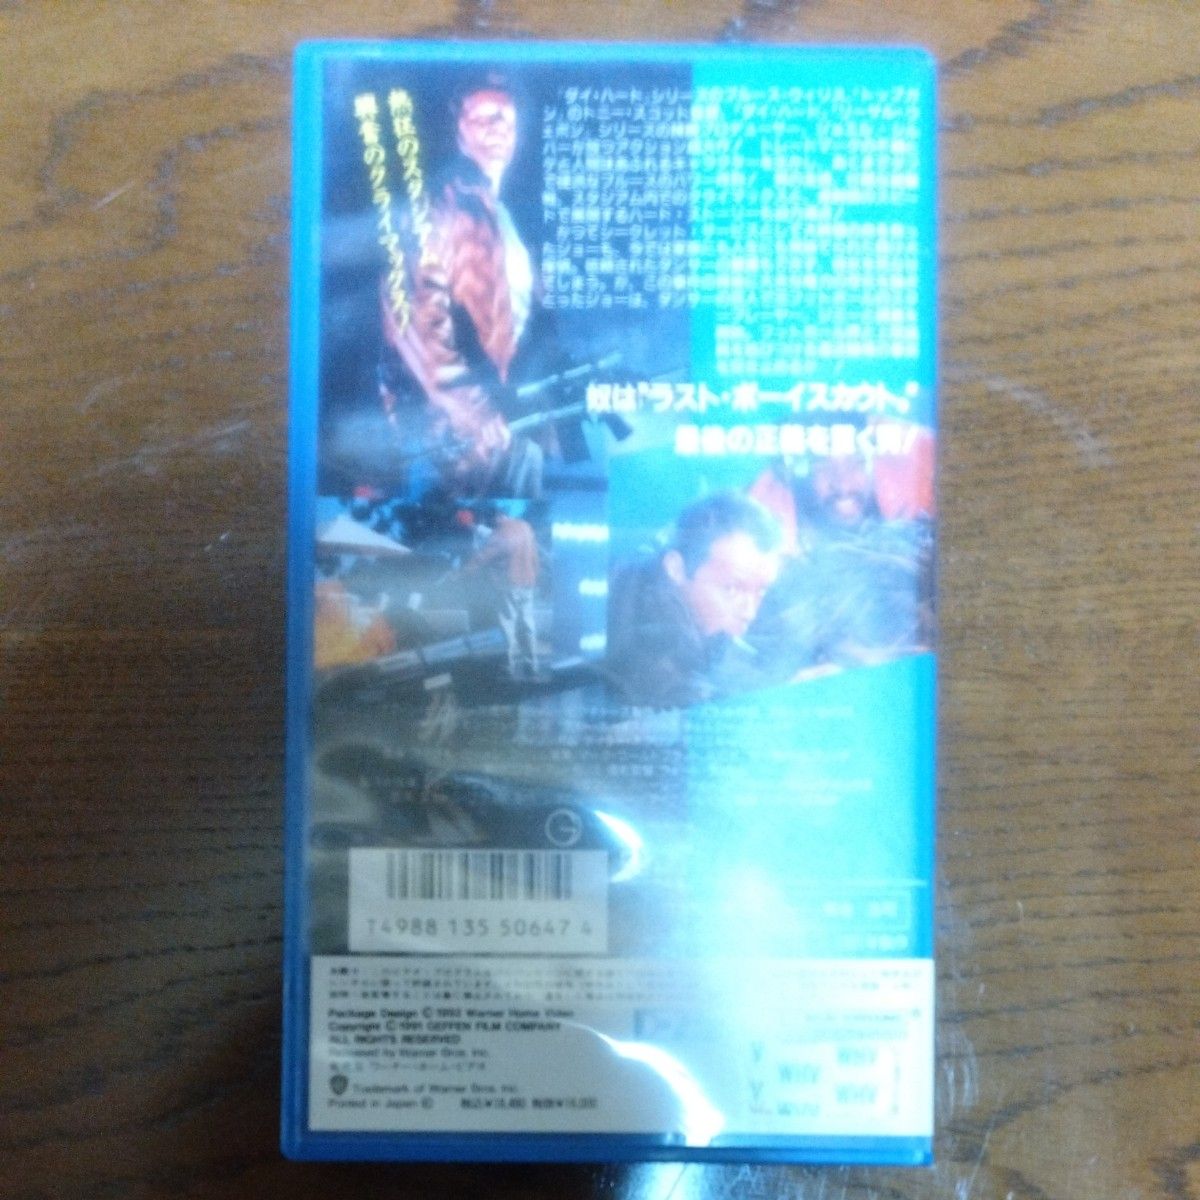 トニー・スコット監督作品 映画『ラストボーイスカウト』VHS ビデオテープ